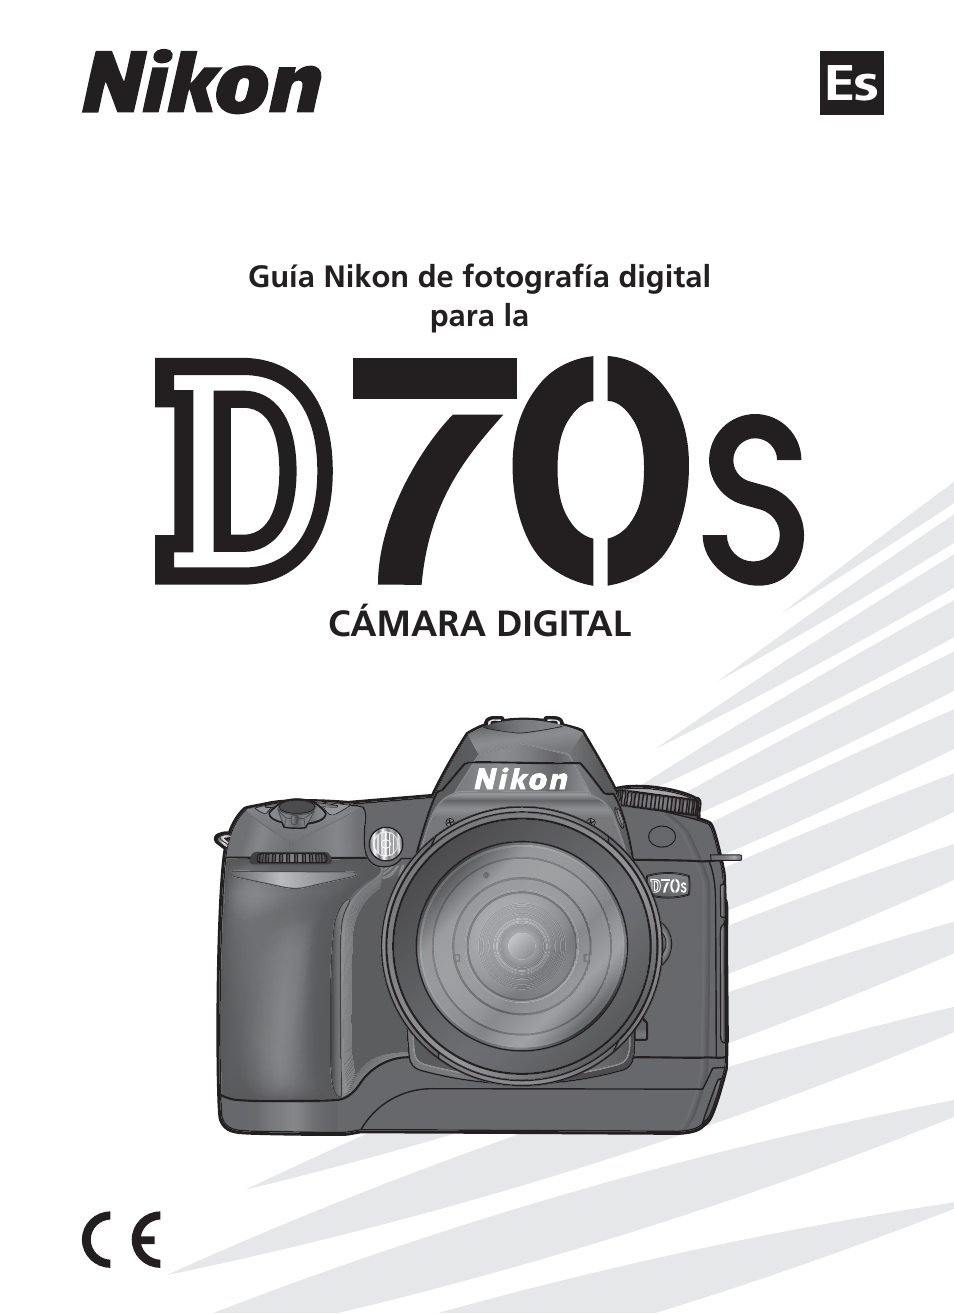 Nikon D70s Dgital Cámara plenamente Impreso Manual de usuario Guía Manual 219 páginas A5 